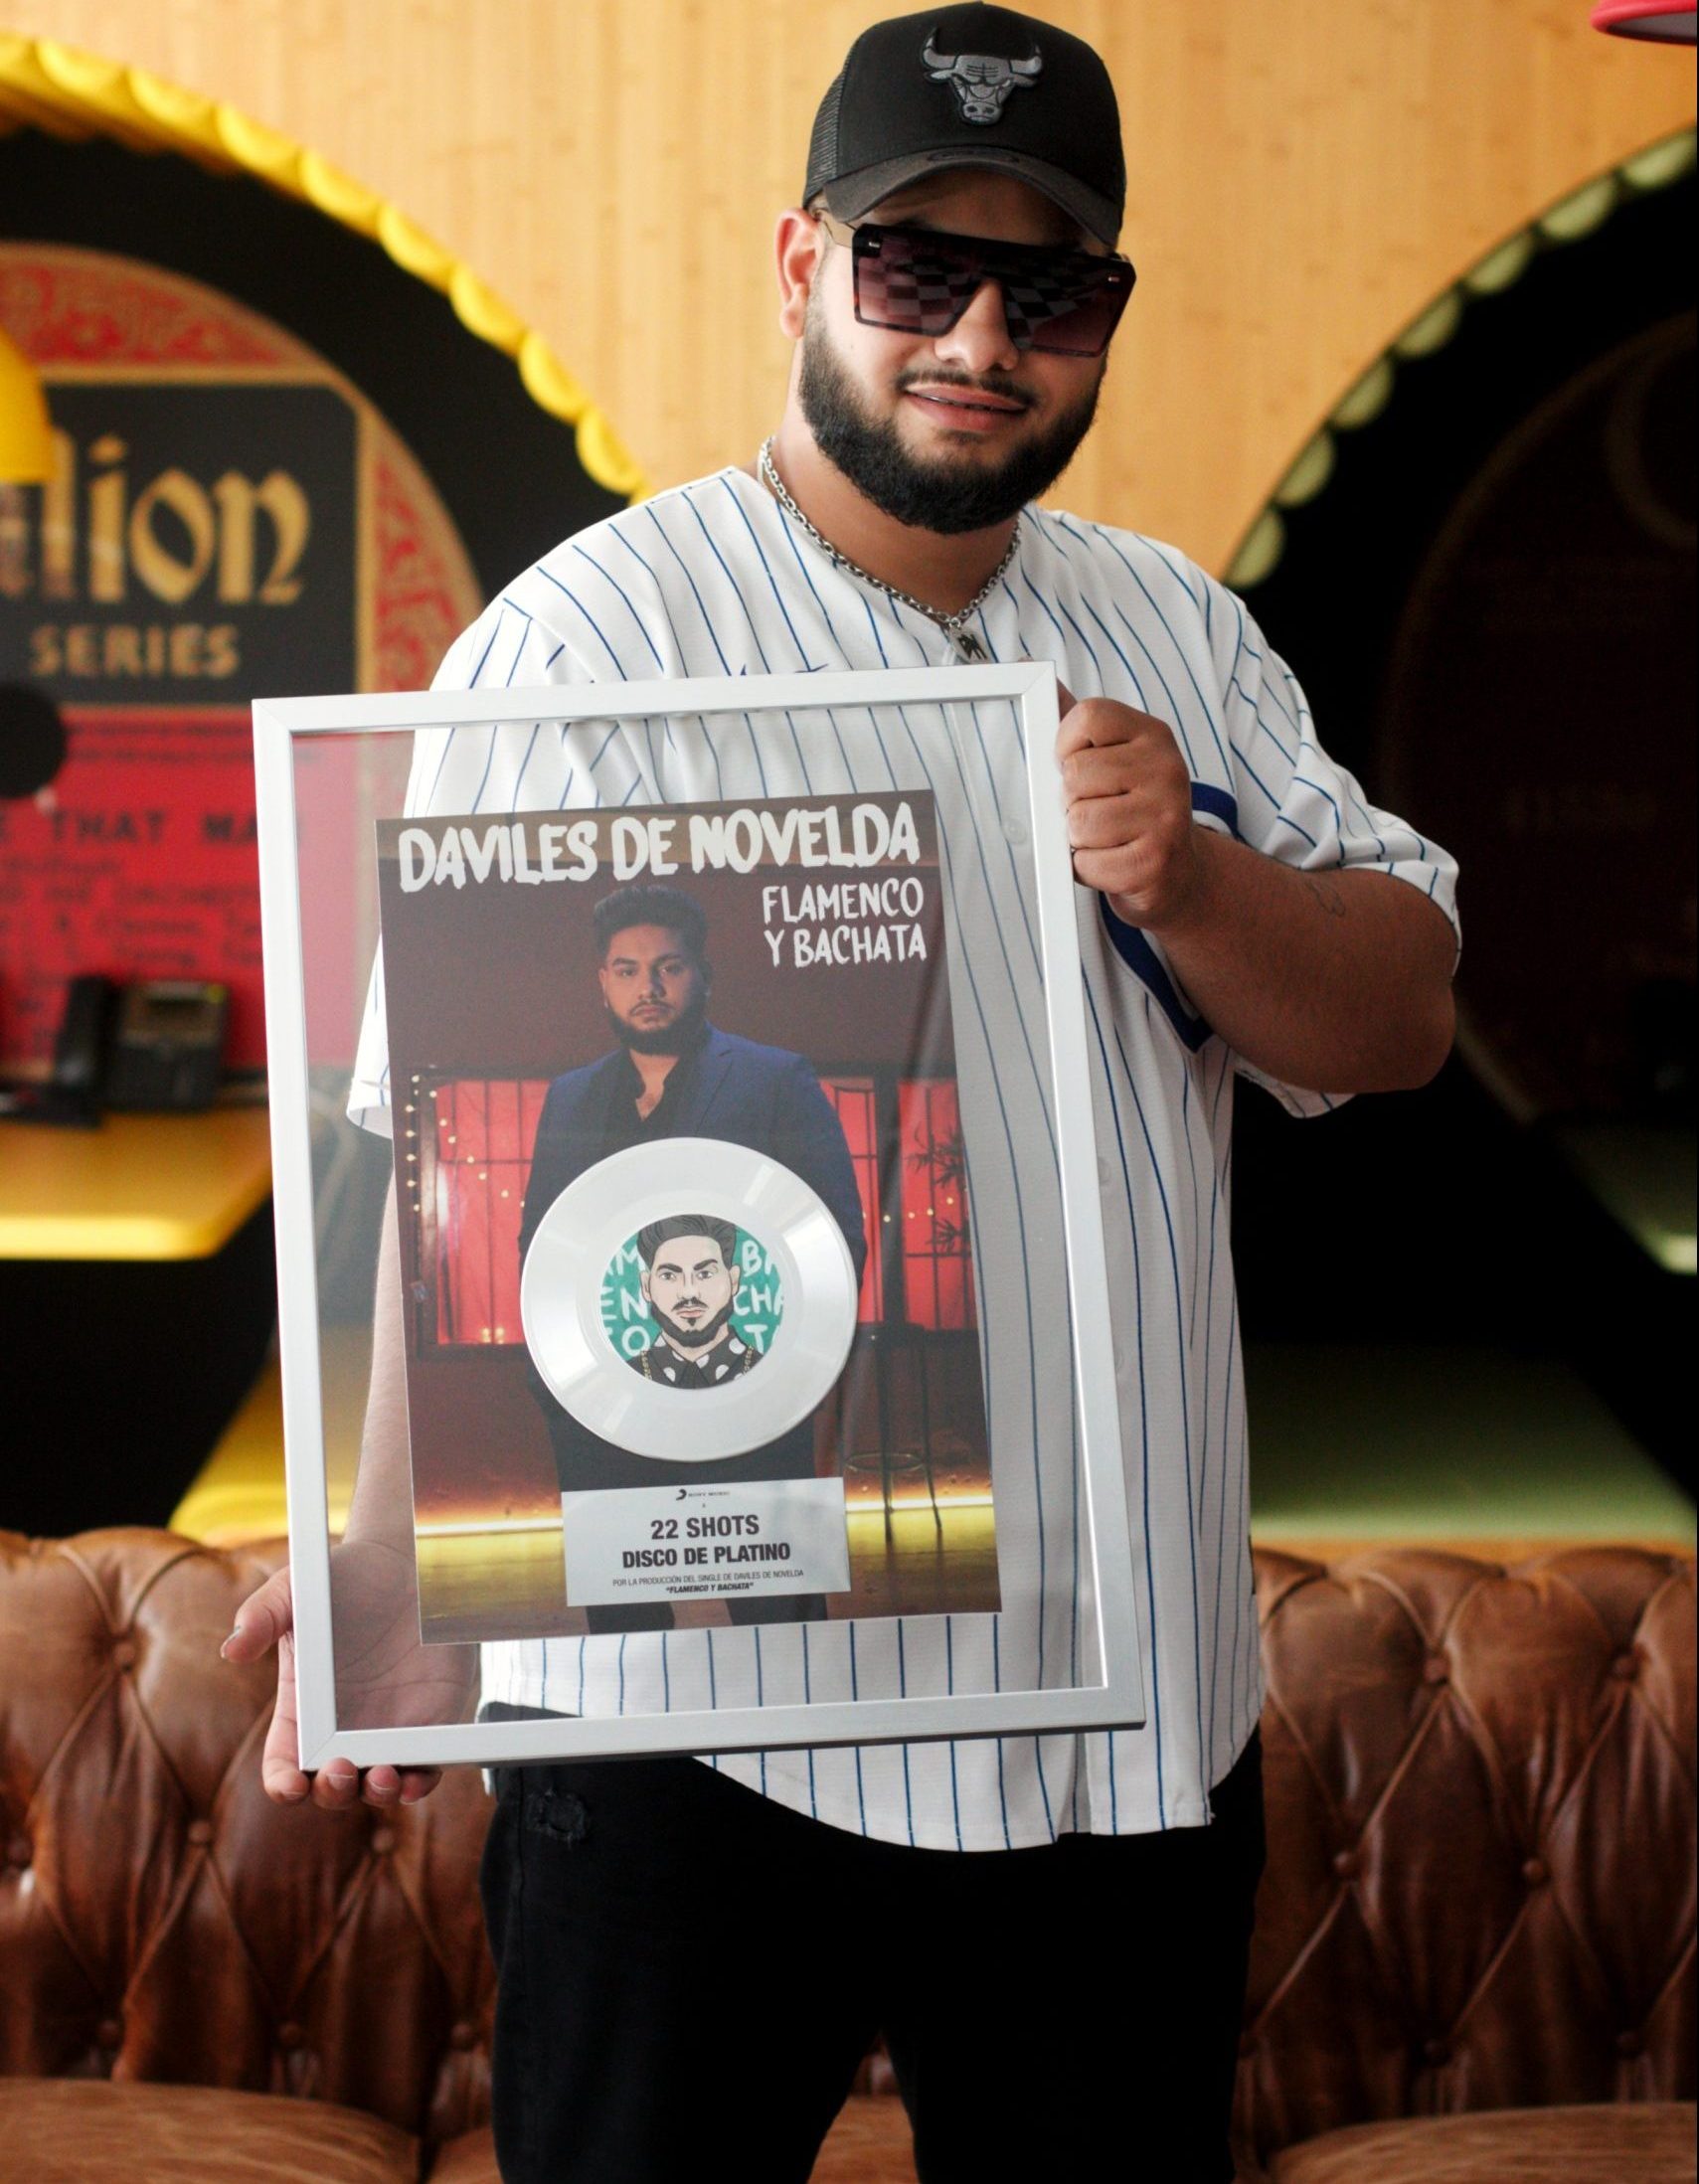 Daviles de Novelda posando con su disco de platino de "22 shots" para Urbzine. Fotografía exclusiva @drainedsoul.portraits